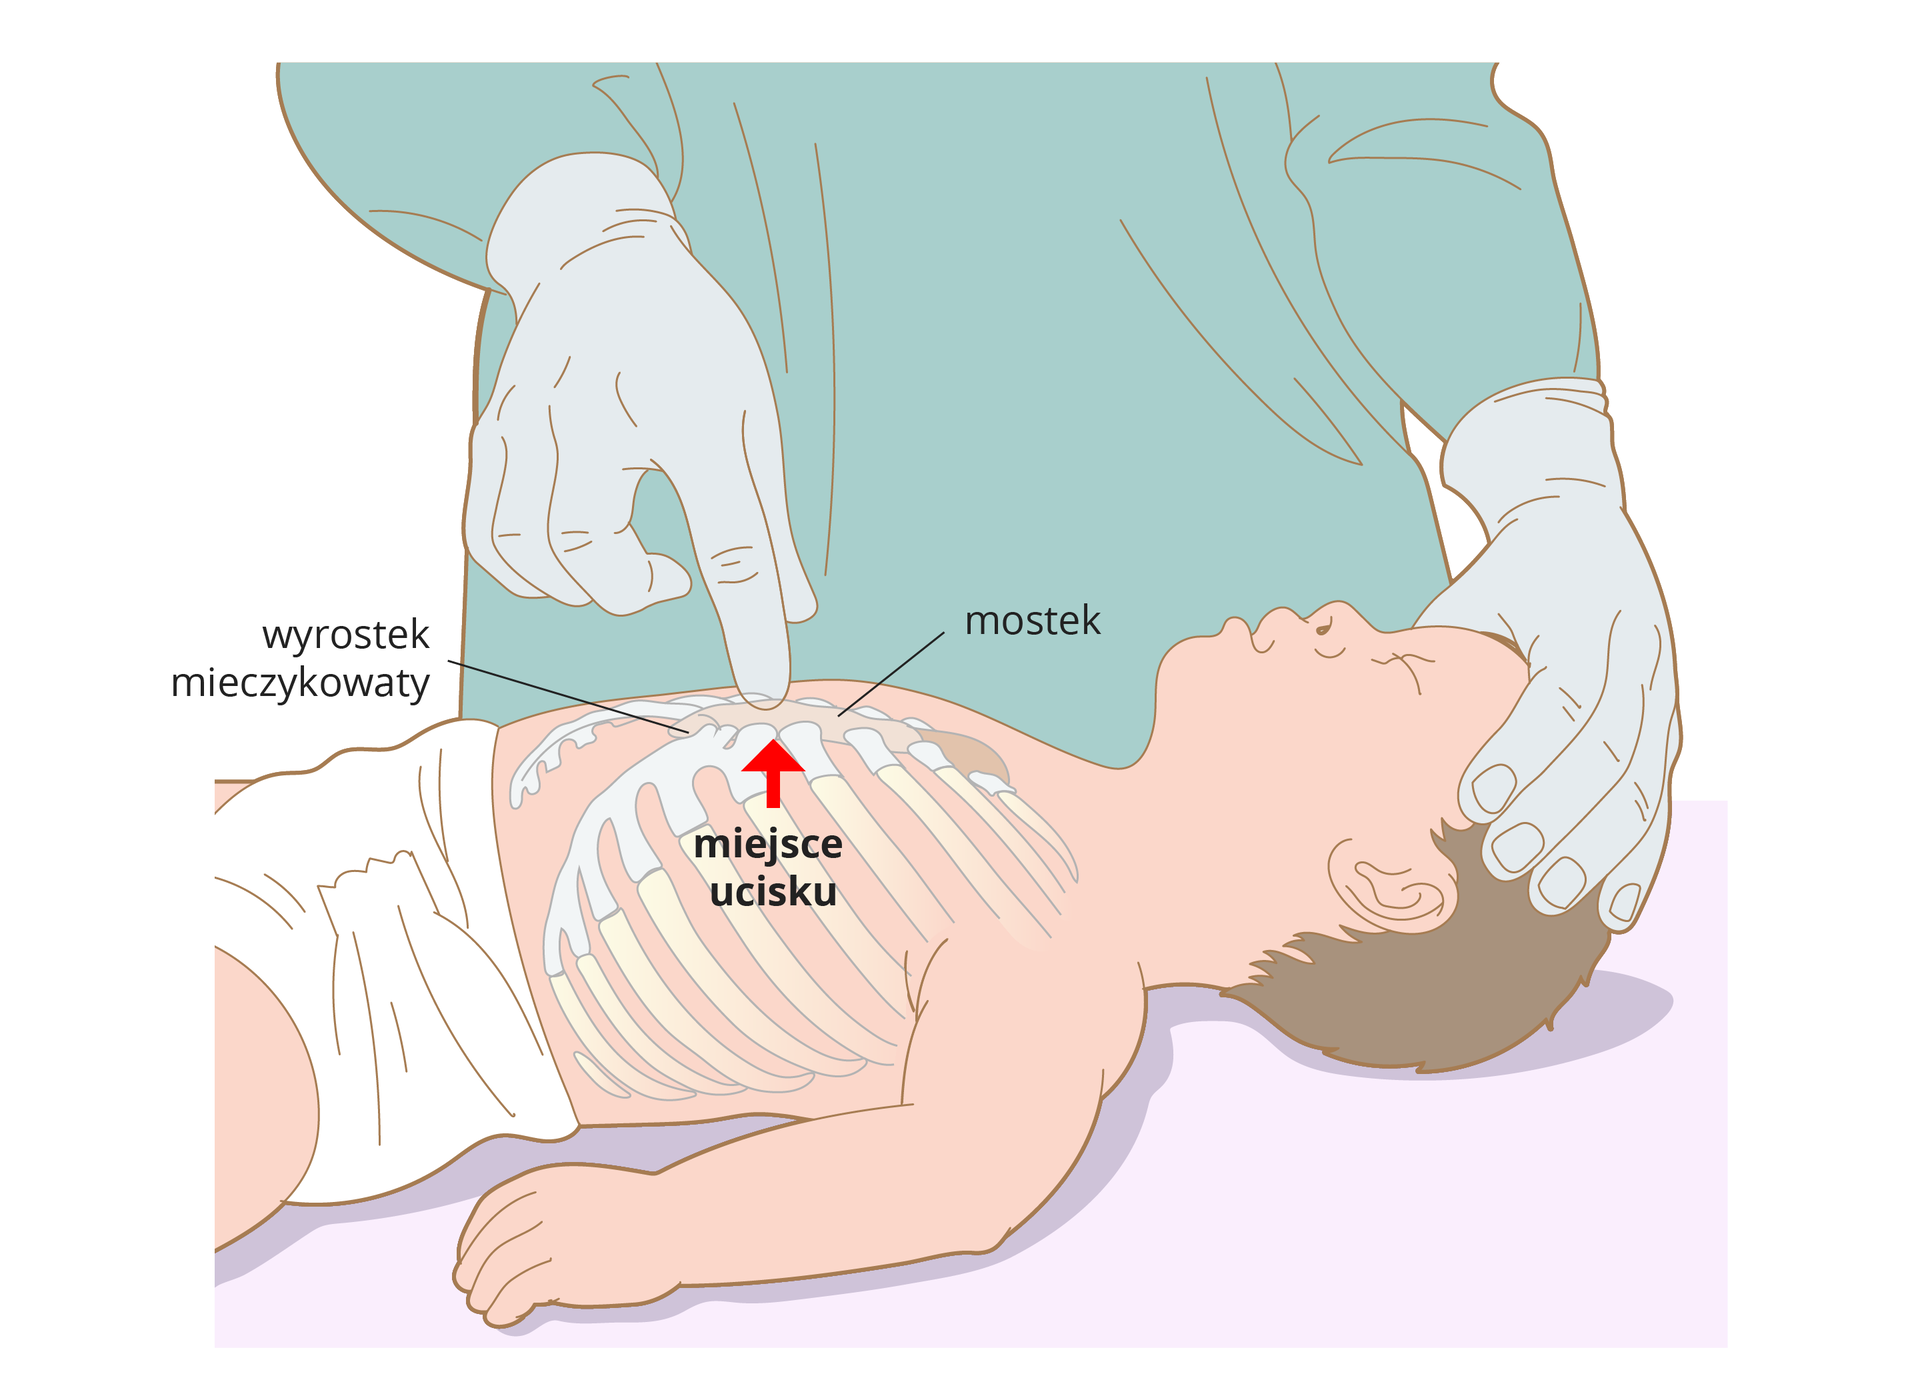 Ilustracja przedstawia niemowlę leżące na plecach bokiem do obserwatora. Niemowlę bez ubranka w samej pieluszce. Głowę przytrzymuje lekarz jedną ręką. Drugą ręką wskazuje na klatkę piersiową dziecka. Na ilustracji zaznaczone są żebra, mostek i wyrostek mieczykowaty. Pionowa strzałka wskazuje miejsce ucisku znajdujące się nad wyrostkiem, w dolnej części mostka.